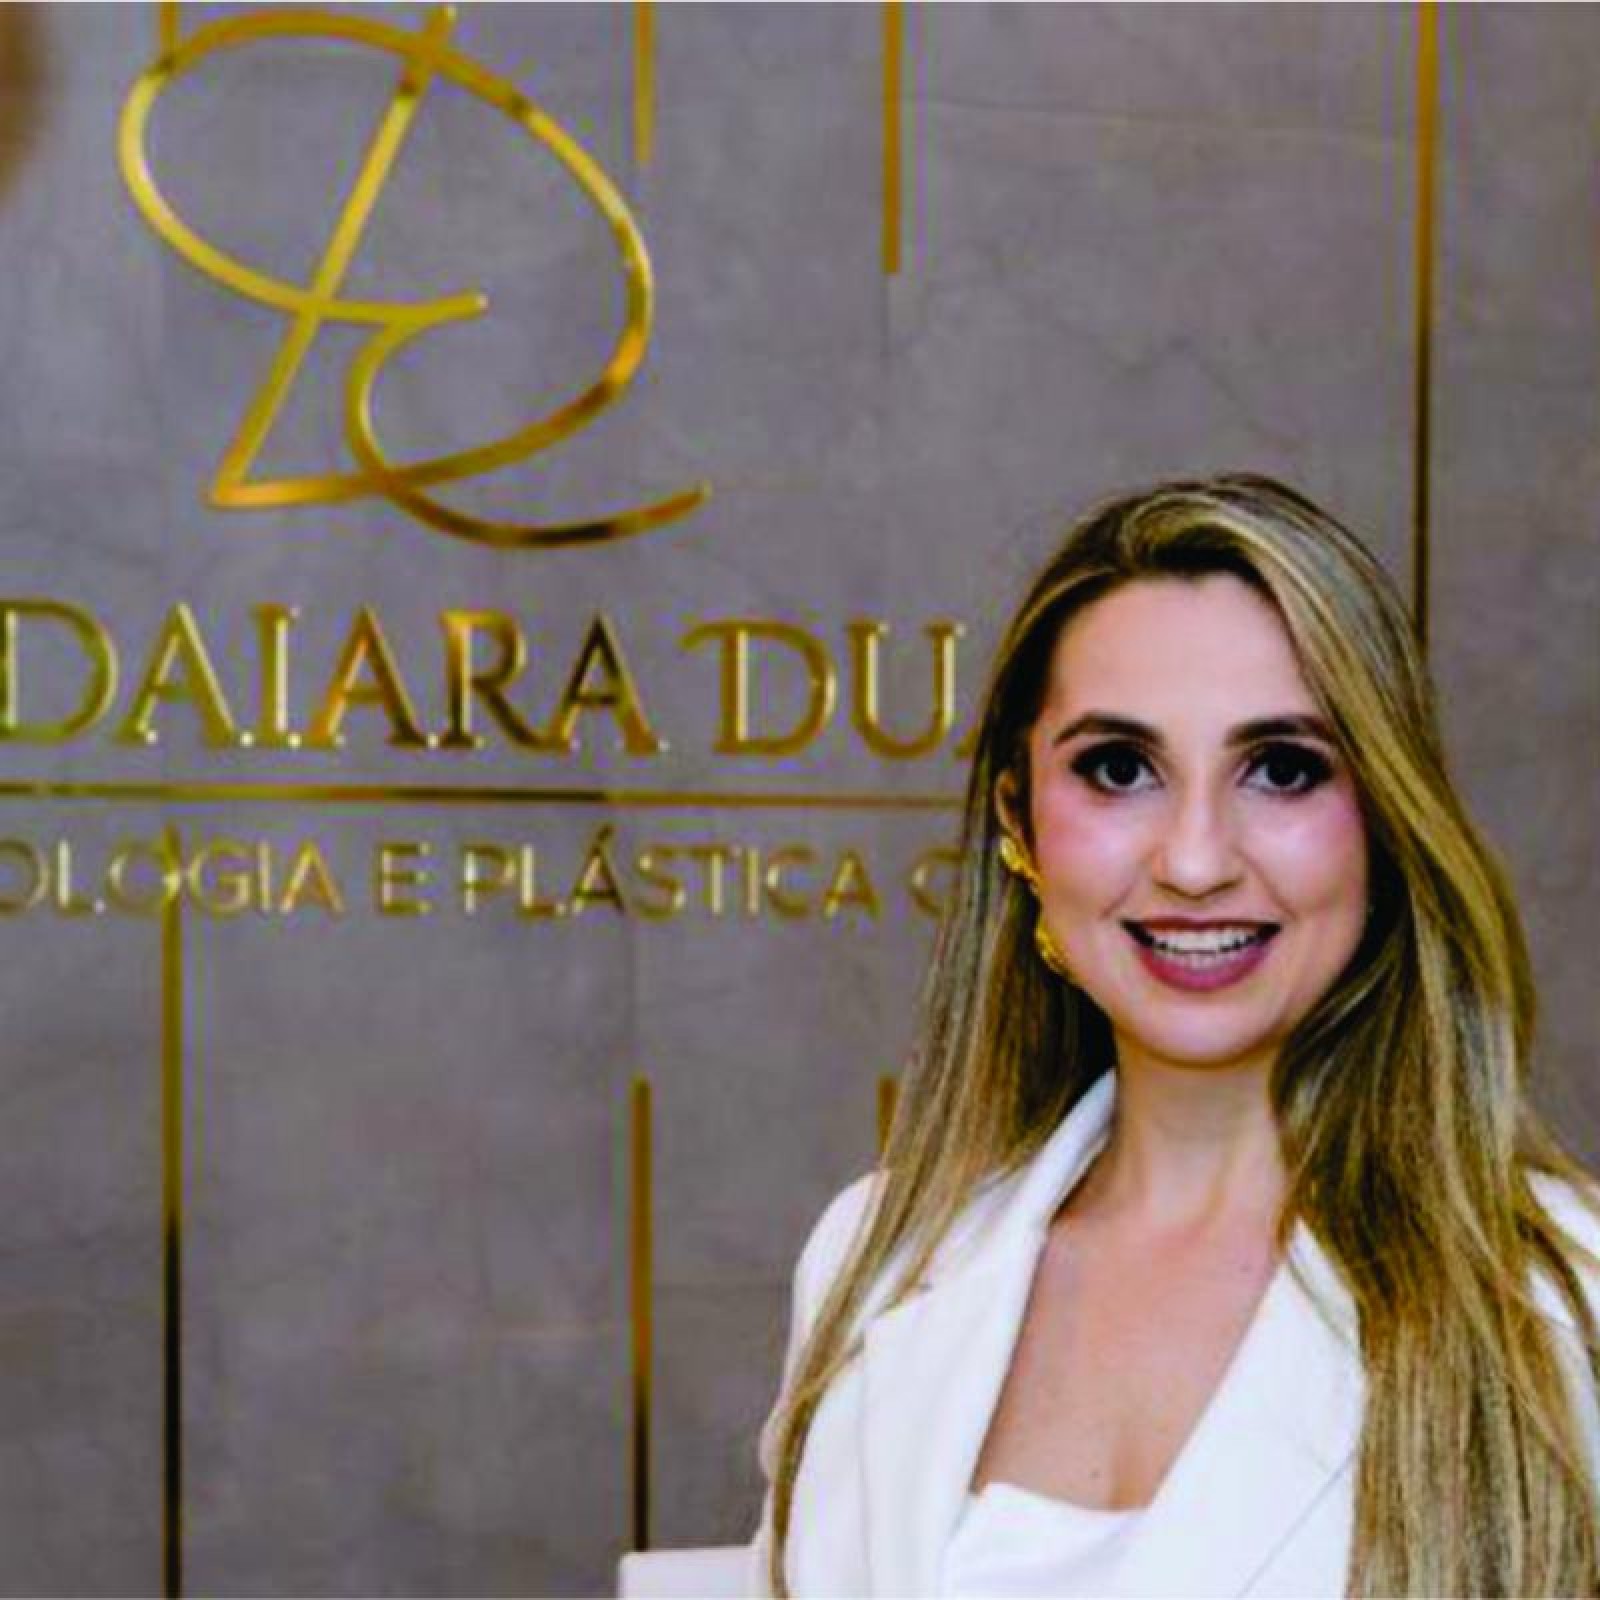 Evento seleto marca inauguração da Clínica Dra Edaiara Duarte, no Imperatriz Medical Center